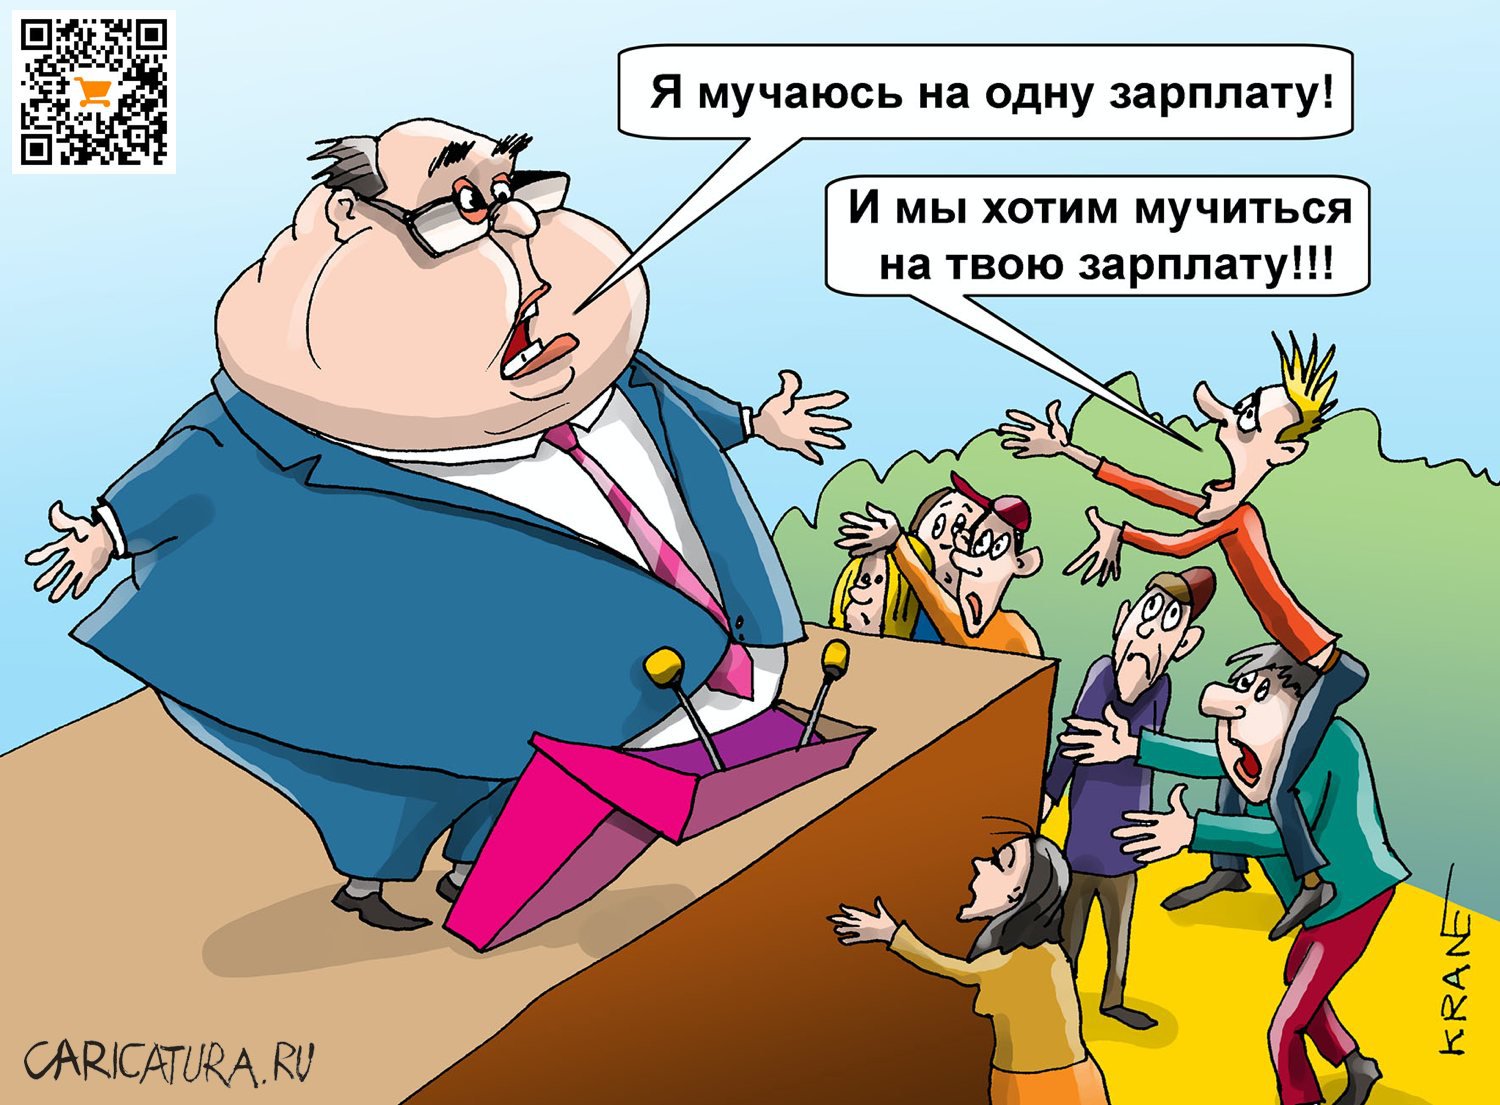 Карикатура "Как мучиться на одну зарплату", Евгений Кран